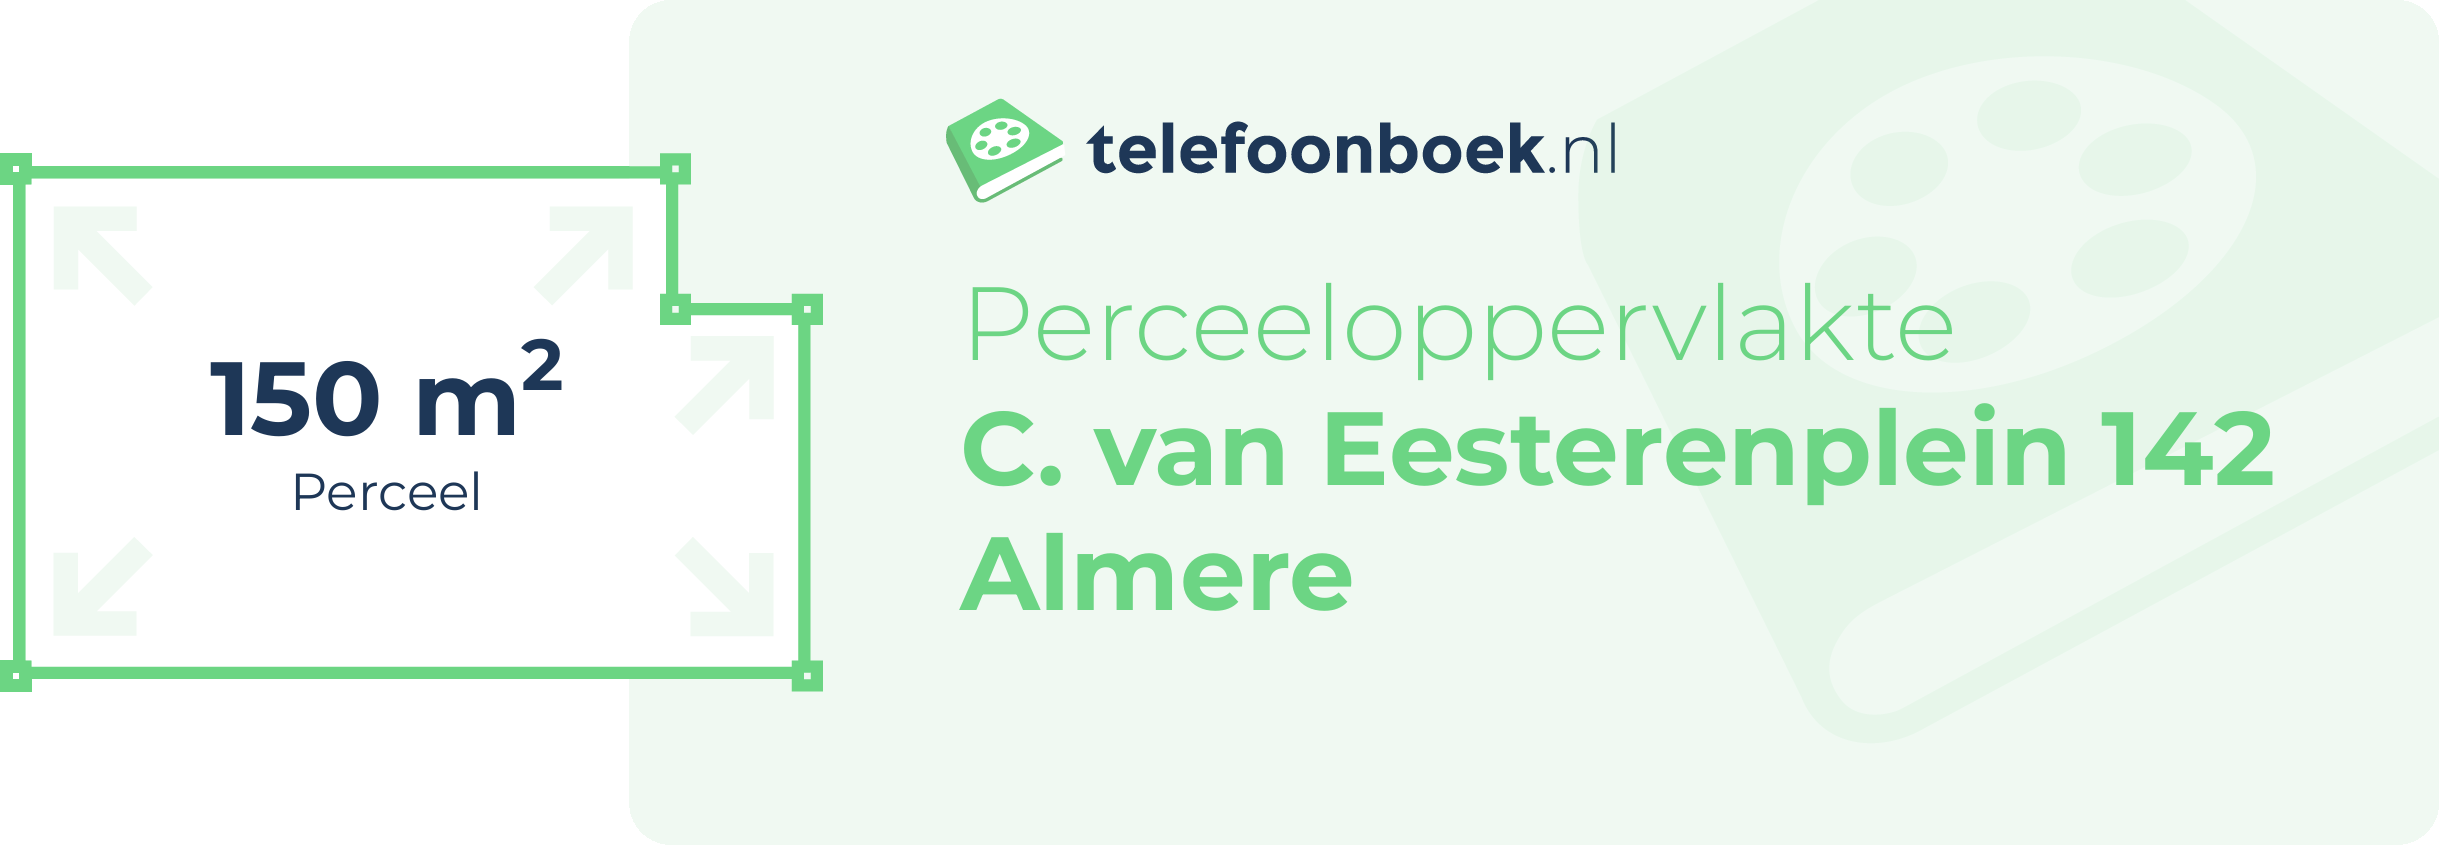 Perceeloppervlakte C. Van Eesterenplein 142 Almere